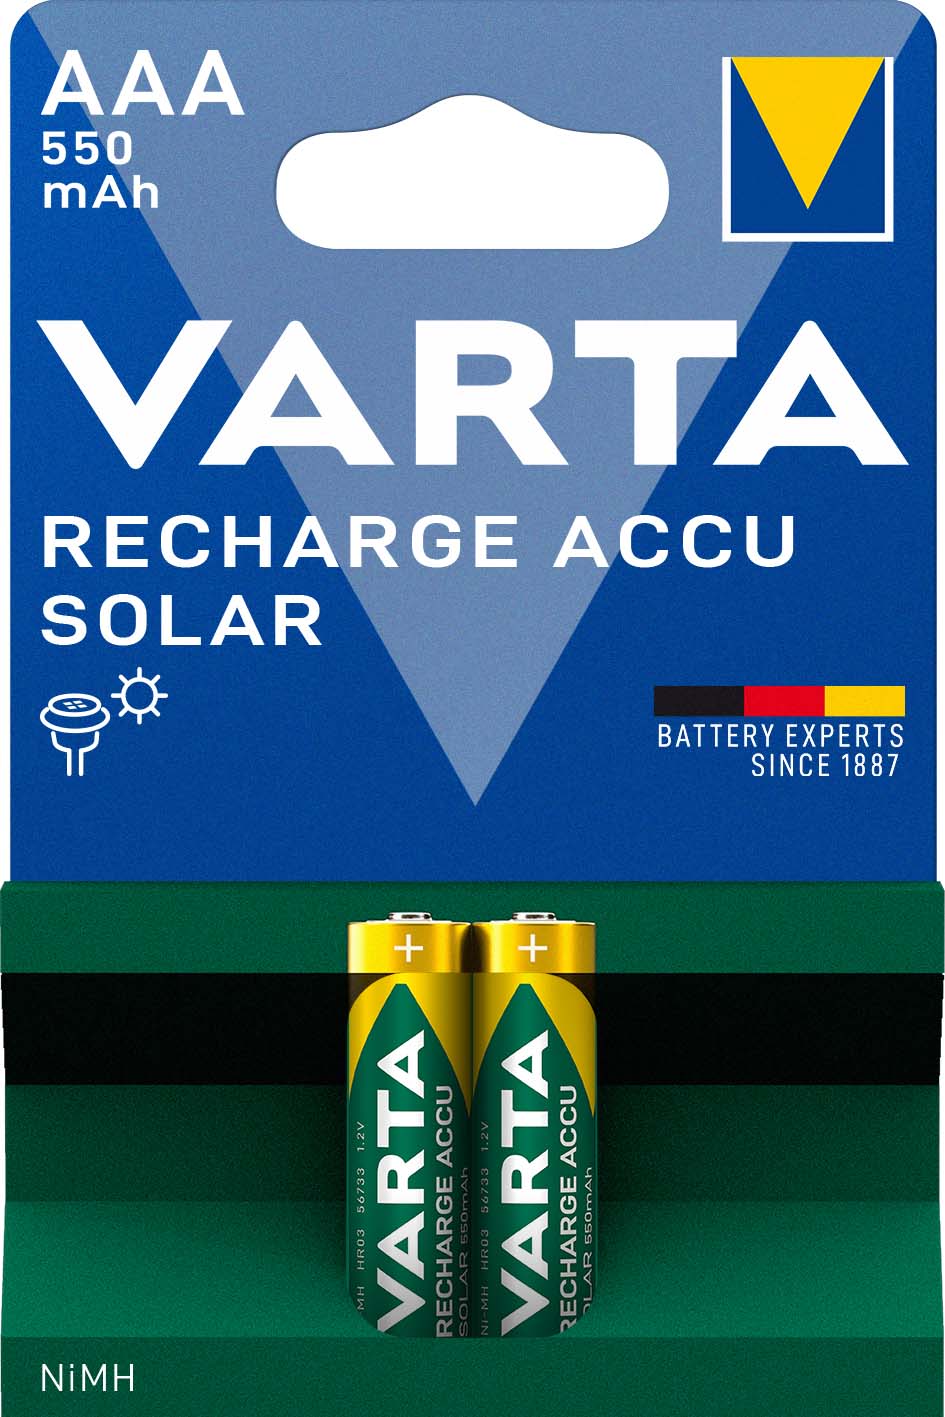 Varta Cons.Varta Recharge Accu Solar AAA 1,2V/550mAh/NiMH 56733 Bli.2